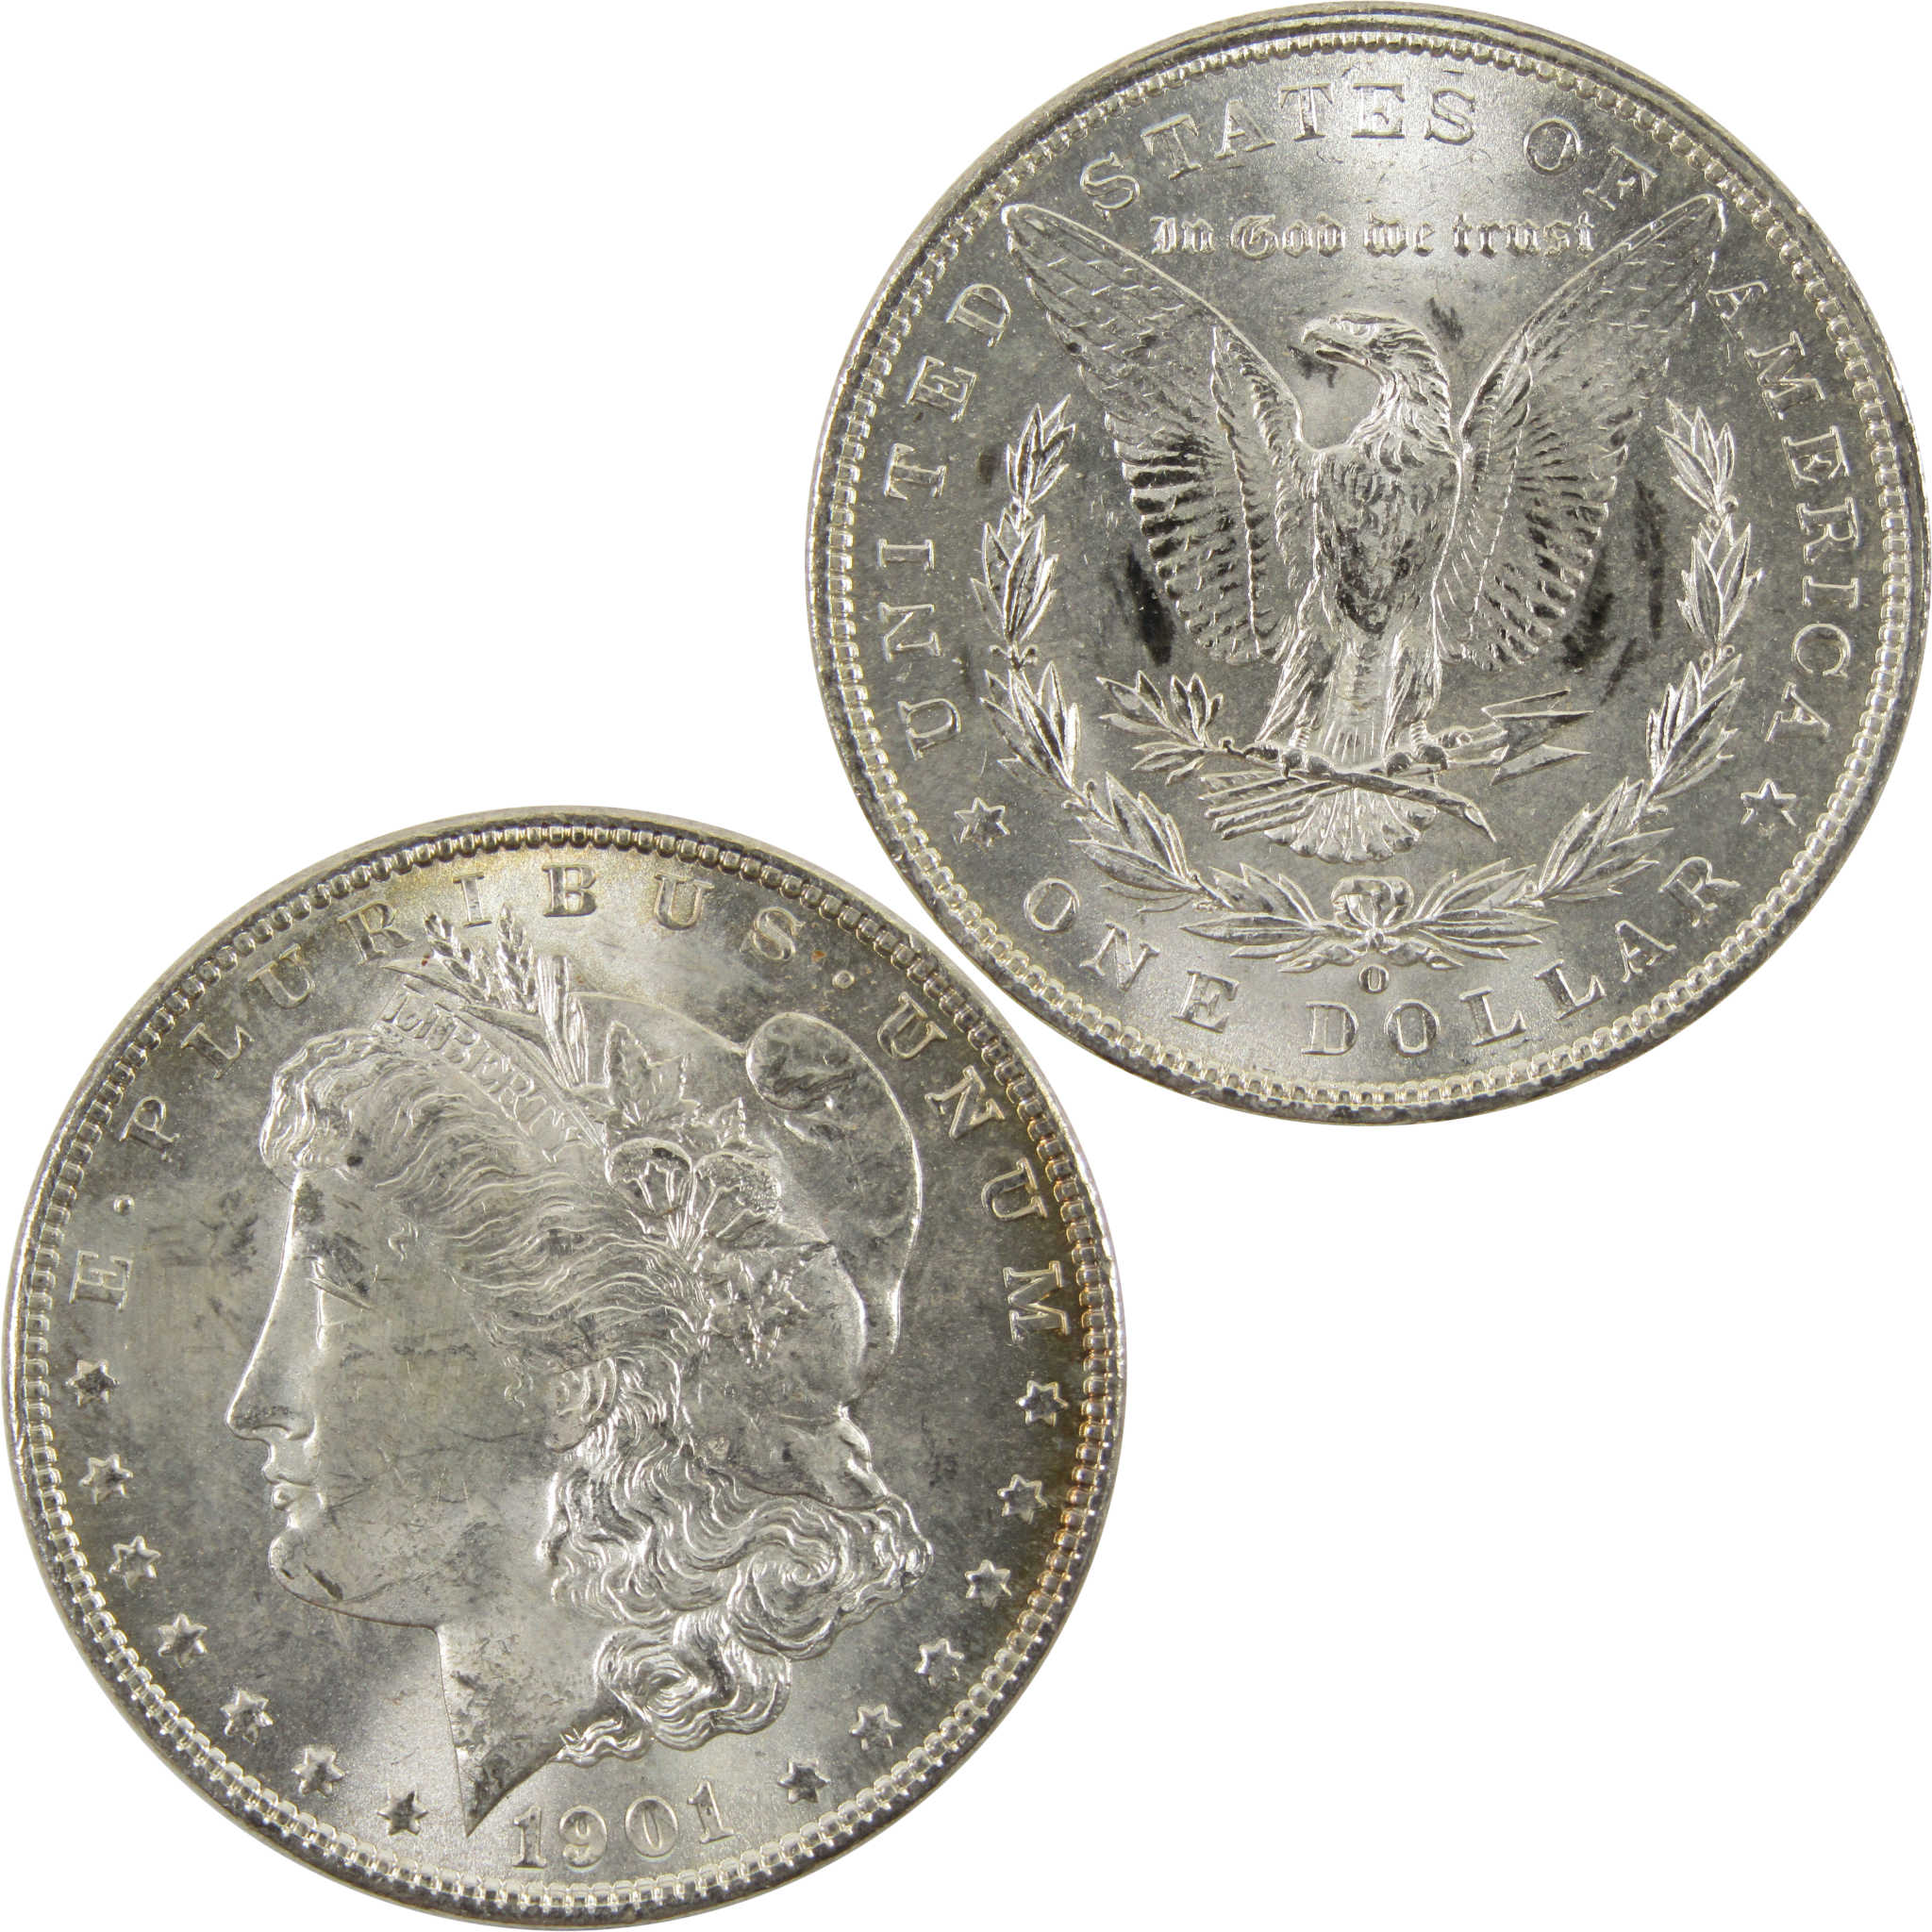 1901 O Morgan Dollar BU Uncirculated 90% Silver $1 Coin SKU:I10476 - Morgan coin - Morgan silver dollar - Morgan silver dollar for sale - Profile Coins &amp; Collectibles